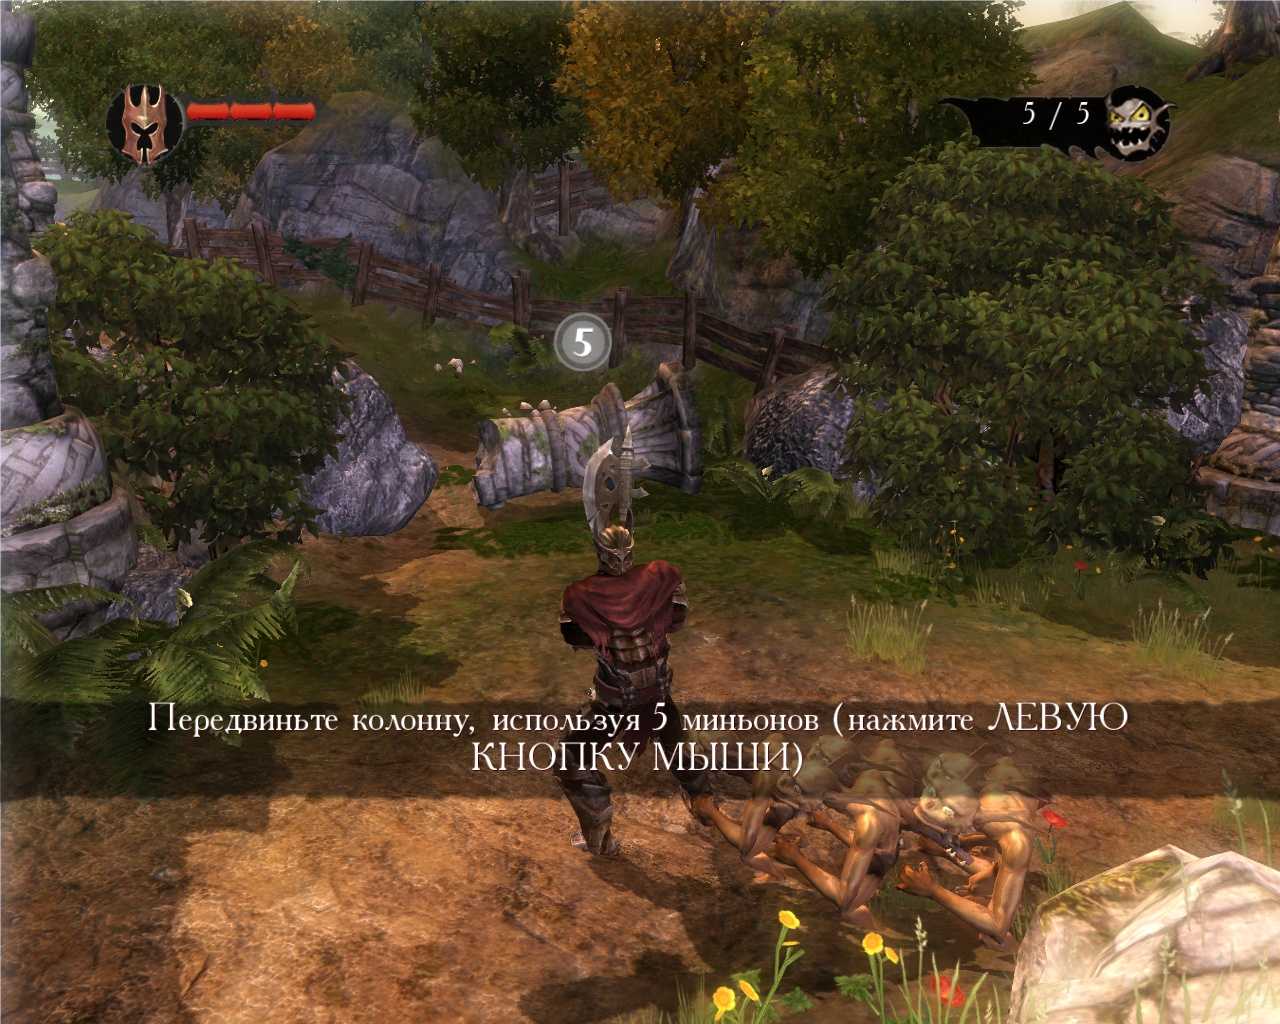 Lost lands 1: dark overlord - прохождение игры полностью с подсказками и головоломками